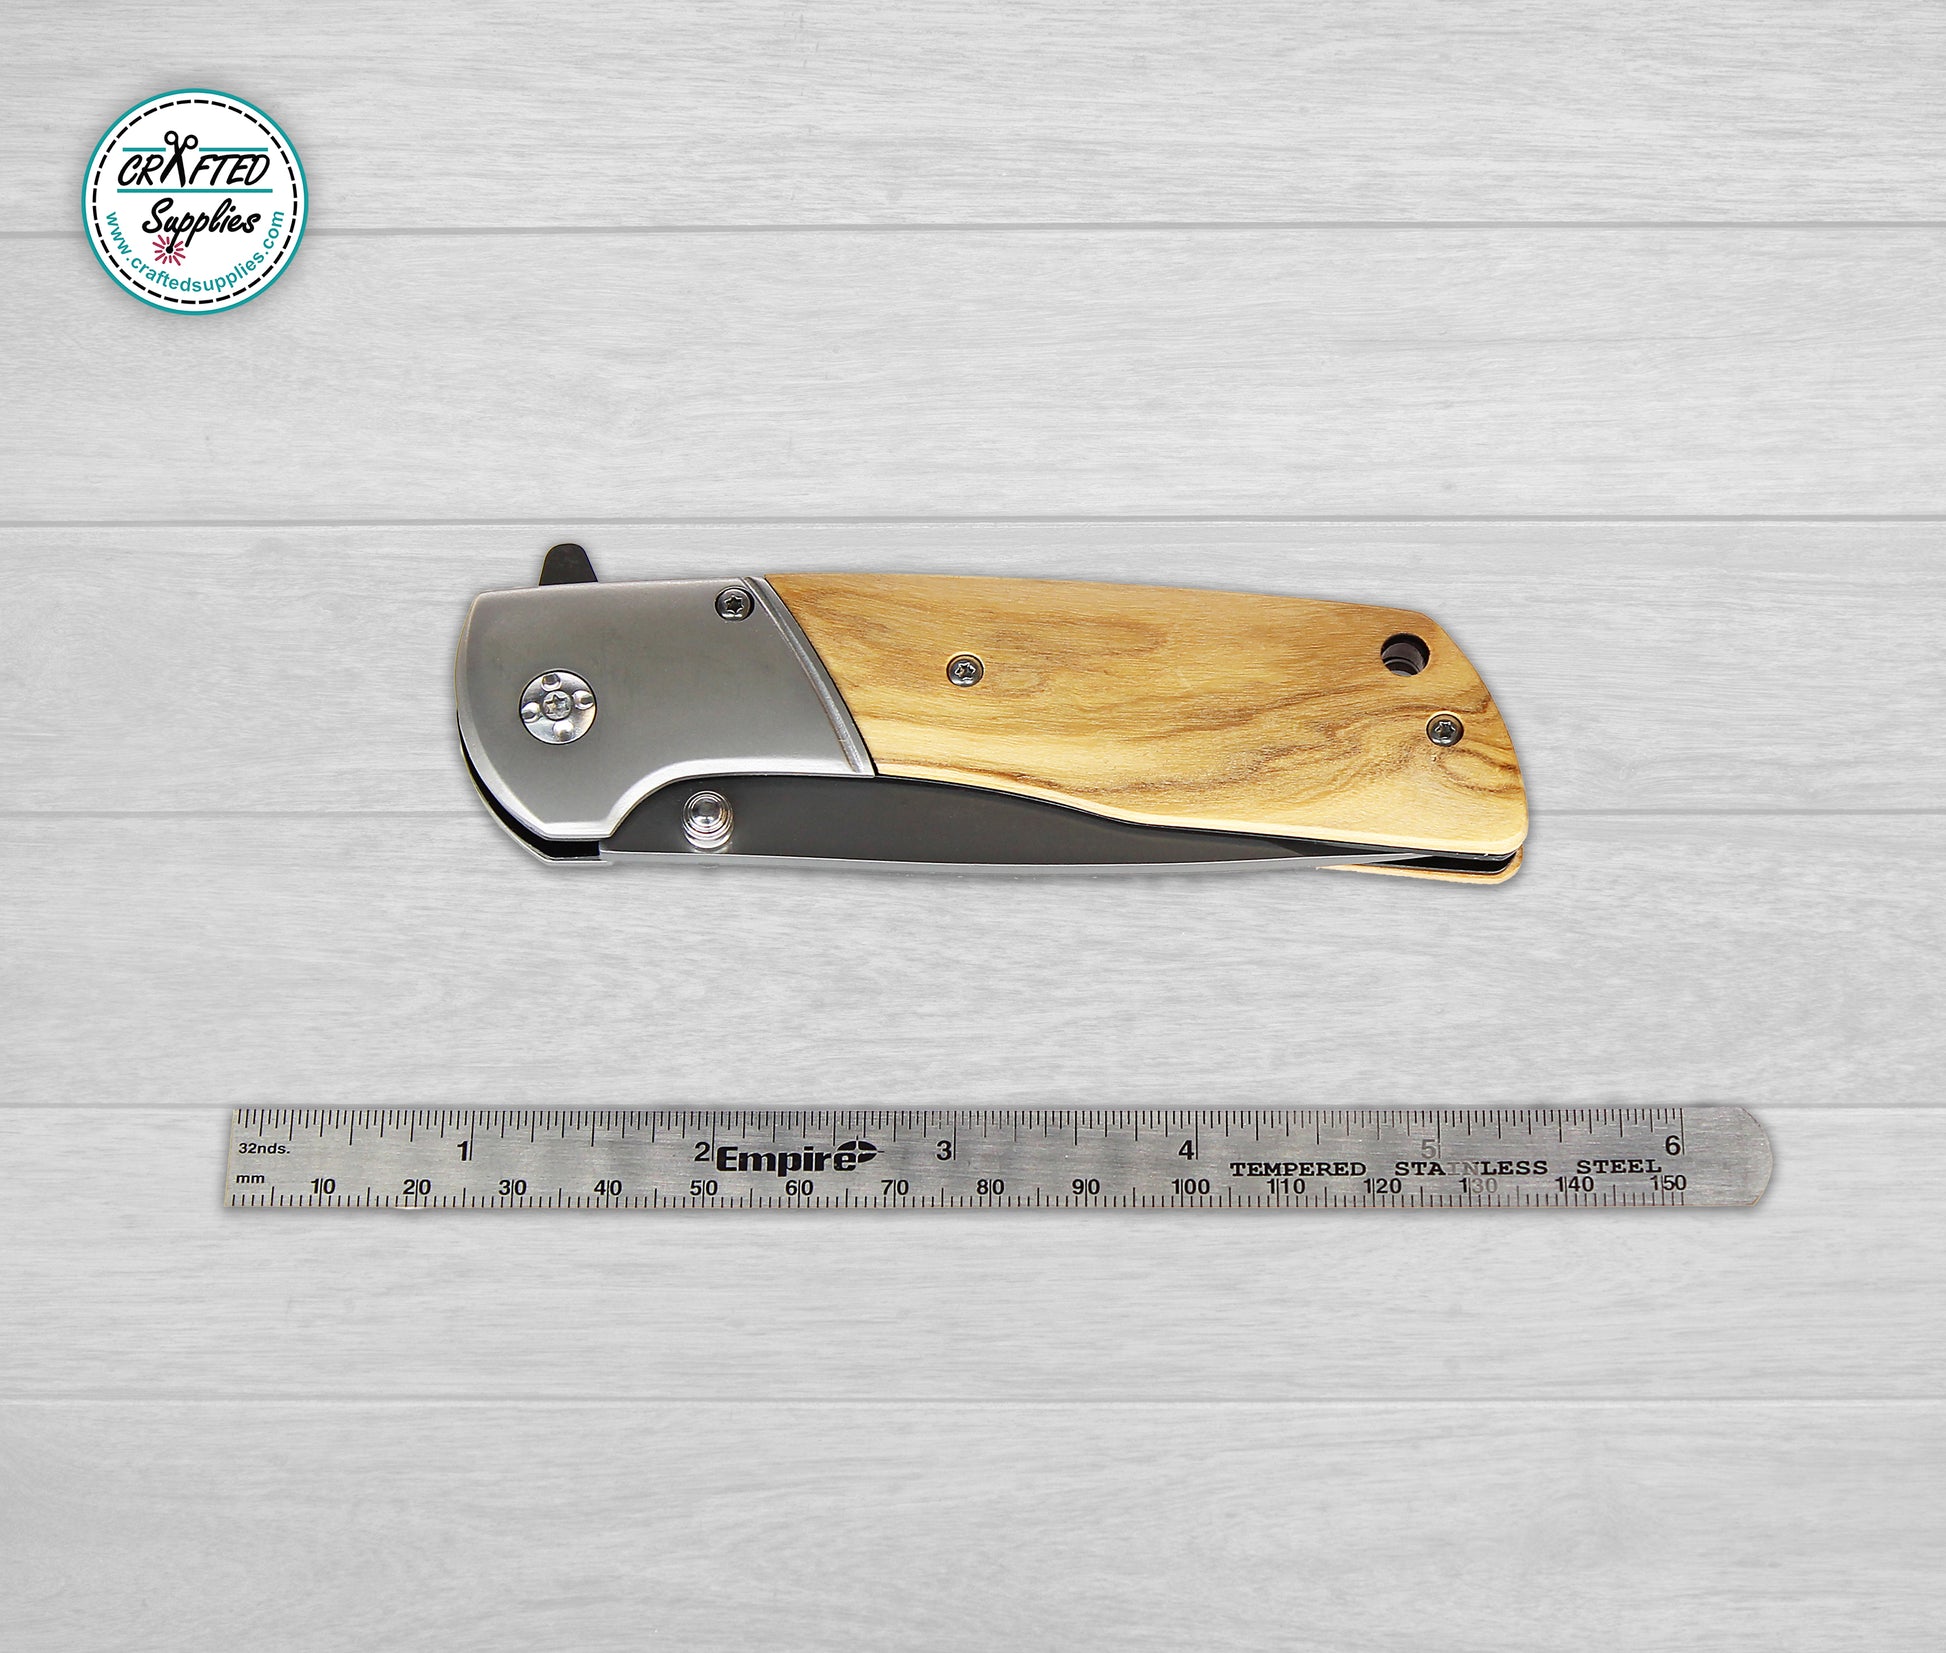 Olive wood knife blank for laser engraving